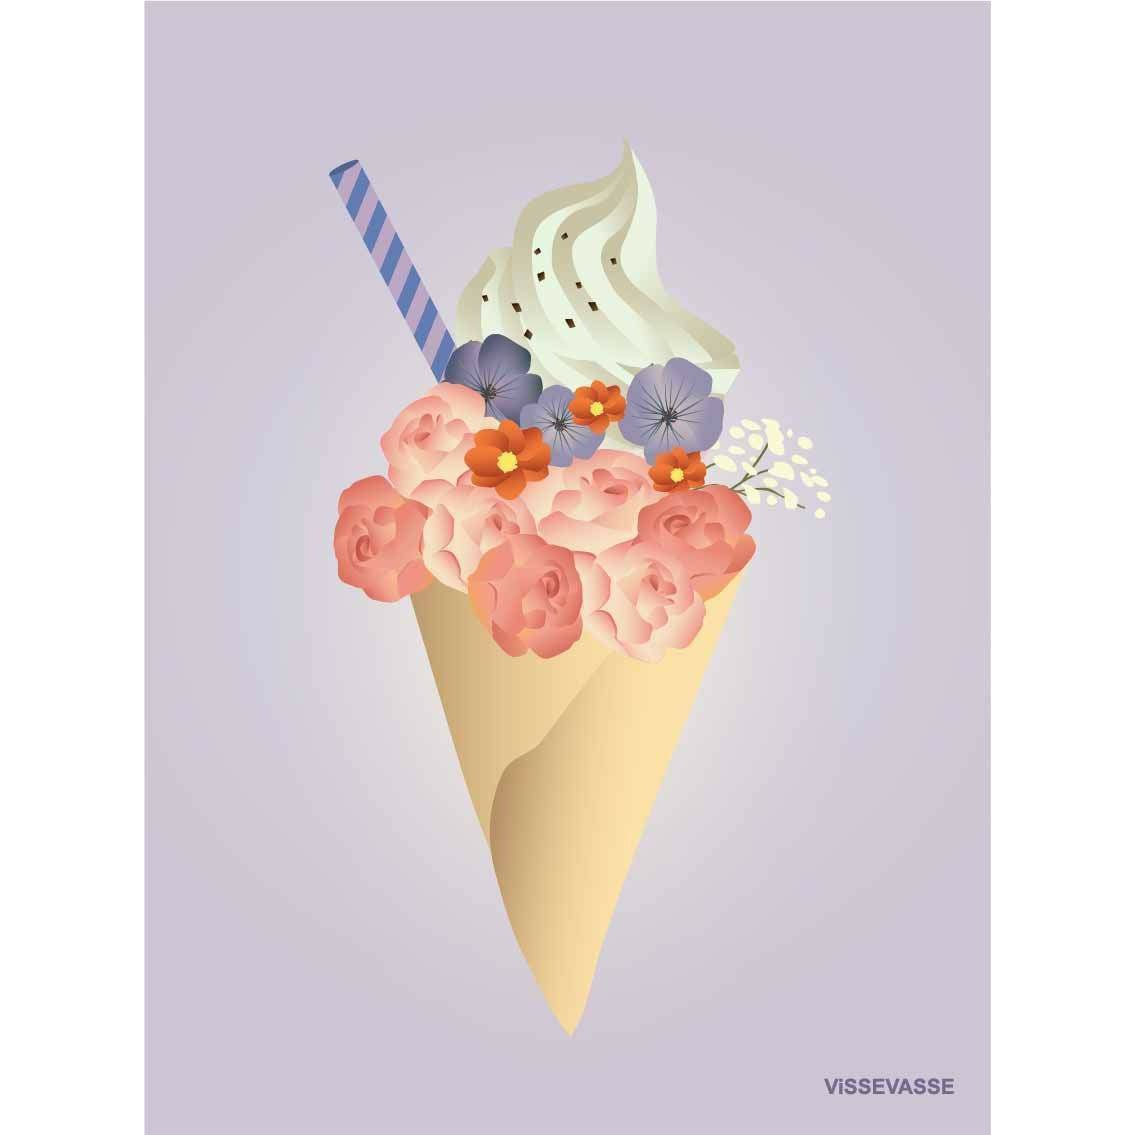 Tarjeta de flores de helado Vissevasse, A7